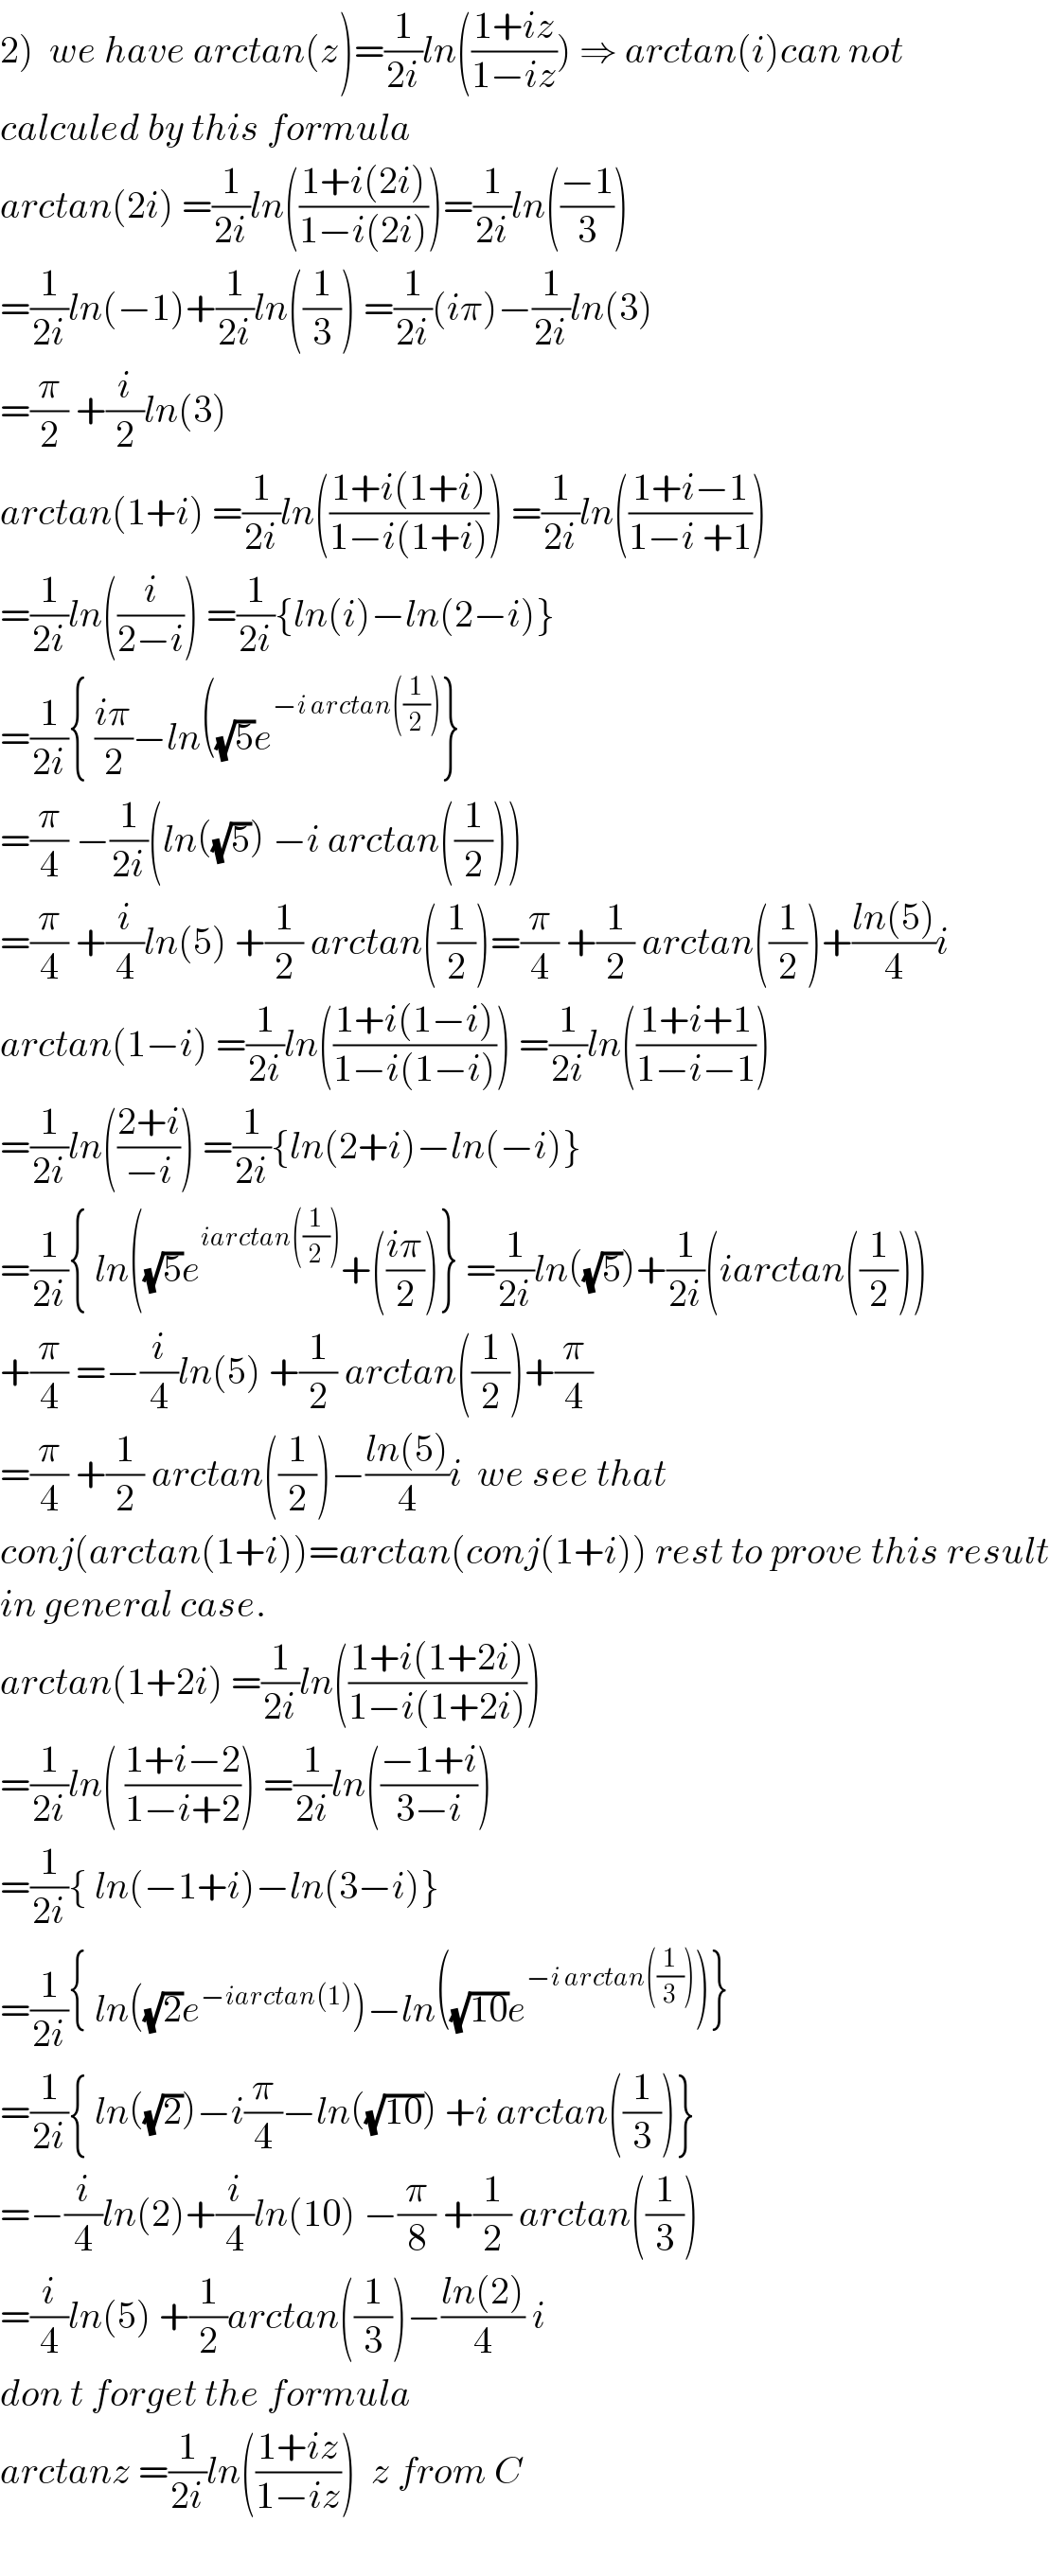 2)  we have arctan(z)=(1/(2i))ln(((1+iz)/(1−iz))) ⇒ arctan(i)can not   calculed by this formula  arctan(2i) =(1/(2i))ln(((1+i(2i))/(1−i(2i))))=(1/(2i))ln(((−1)/3))  =(1/(2i))ln(−1)+(1/(2i))ln((1/3)) =(1/(2i))(iπ)−(1/(2i))ln(3)  =(π/2) +(i/2)ln(3)  arctan(1+i) =(1/(2i))ln(((1+i(1+i))/(1−i(1+i)))) =(1/(2i))ln(((1+i−1)/(1−i +1)))  =(1/(2i))ln((i/(2−i))) =(1/(2i)){ln(i)−ln(2−i)}  =(1/(2i)){ ((iπ)/2)−ln((√5)e^(−i arctan((1/2))) }  =(π/4) −(1/(2i))(ln((√5)) −i arctan((1/2)))  =(π/4) +(i/4)ln(5) +(1/2) arctan((1/2))=(π/4) +(1/2) arctan((1/2))+((ln(5))/4)i  arctan(1−i) =(1/(2i))ln(((1+i(1−i))/(1−i(1−i)))) =(1/(2i))ln(((1+i+1)/(1−i−1)))  =(1/(2i))ln(((2+i)/(−i))) =(1/(2i)){ln(2+i)−ln(−i)}  =(1/(2i)){ ln((√5)e^(iarctan((1/2))) +(((iπ)/2))} =(1/(2i))ln((√5))+(1/(2i))(iarctan((1/2)))  +(π/4) =−(i/4)ln(5) +(1/2) arctan((1/2))+(π/4)  =(π/4) +(1/2) arctan((1/2))−((ln(5))/4)i  we see that  conj(arctan(1+i))=arctan(conj(1+i)) rest to prove this result  in general case.  arctan(1+2i) =(1/(2i))ln(((1+i(1+2i))/(1−i(1+2i))))  =(1/(2i))ln( ((1+i−2)/(1−i+2))) =(1/(2i))ln(((−1+i)/(3−i)))  =(1/(2i)){ ln(−1+i)−ln(3−i)}  =(1/(2i)){ ln((√2)e^(−iarctan(1)) )−ln((√(10))e^(−i arctan((1/3))) )}  =(1/(2i)){ ln((√2))−i(π/4)−ln((√(10))) +i arctan((1/3))}  =−(i/4)ln(2)+(i/4)ln(10) −(π/8) +(1/2) arctan((1/3))  =(i/4)ln(5) +(1/2)arctan((1/3))−((ln(2))/4) i  don t forget the formula  arctanz =(1/(2i))ln(((1+iz)/(1−iz)))  z from C    